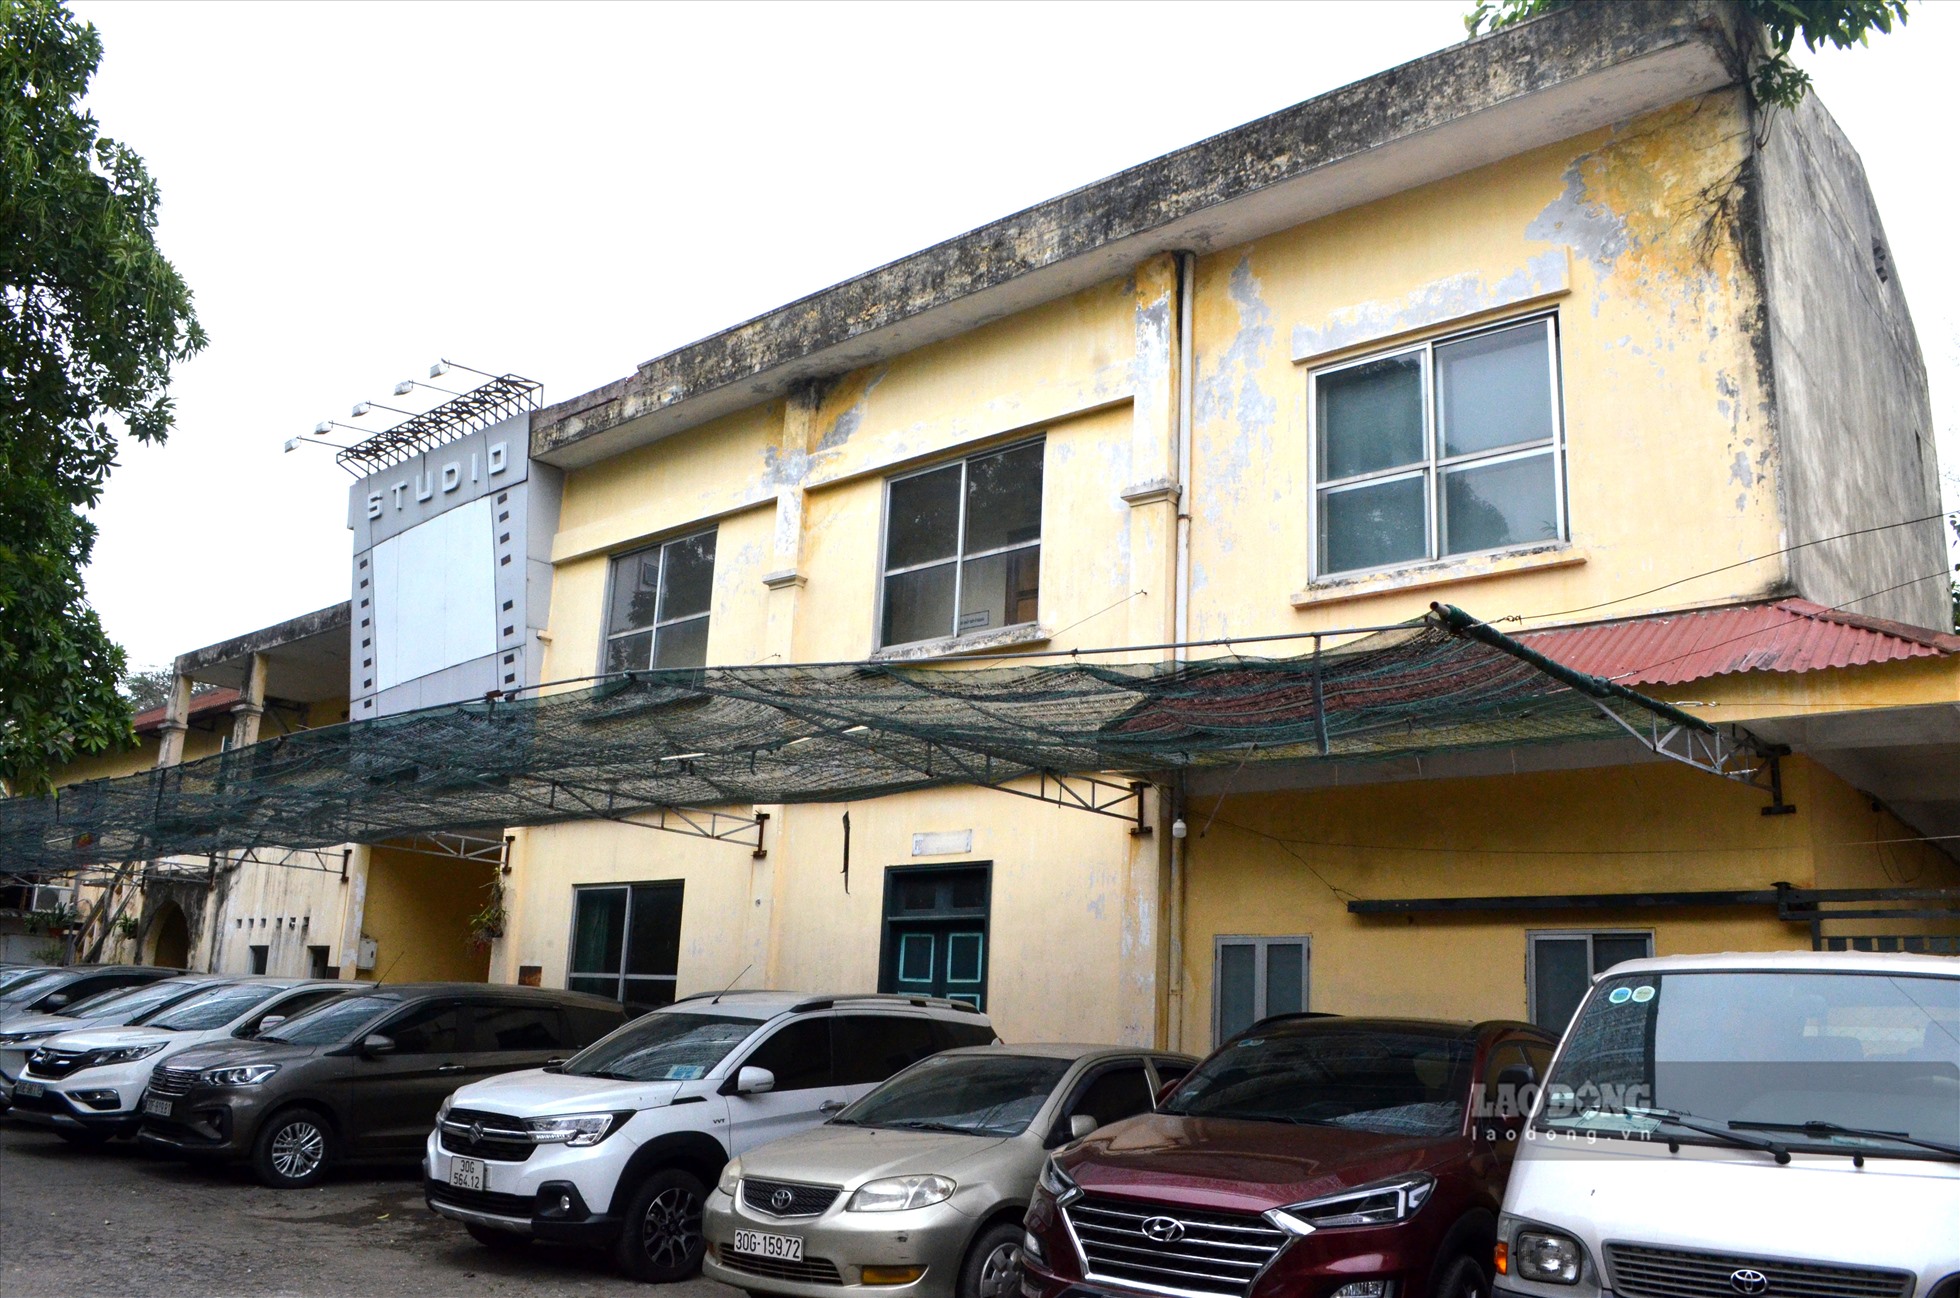 Ghi nhận của Lao Động, khu vực cổng chính trụ sở Hãng phim, giờ là nơi trông giữ xe ô tô, xe máy.